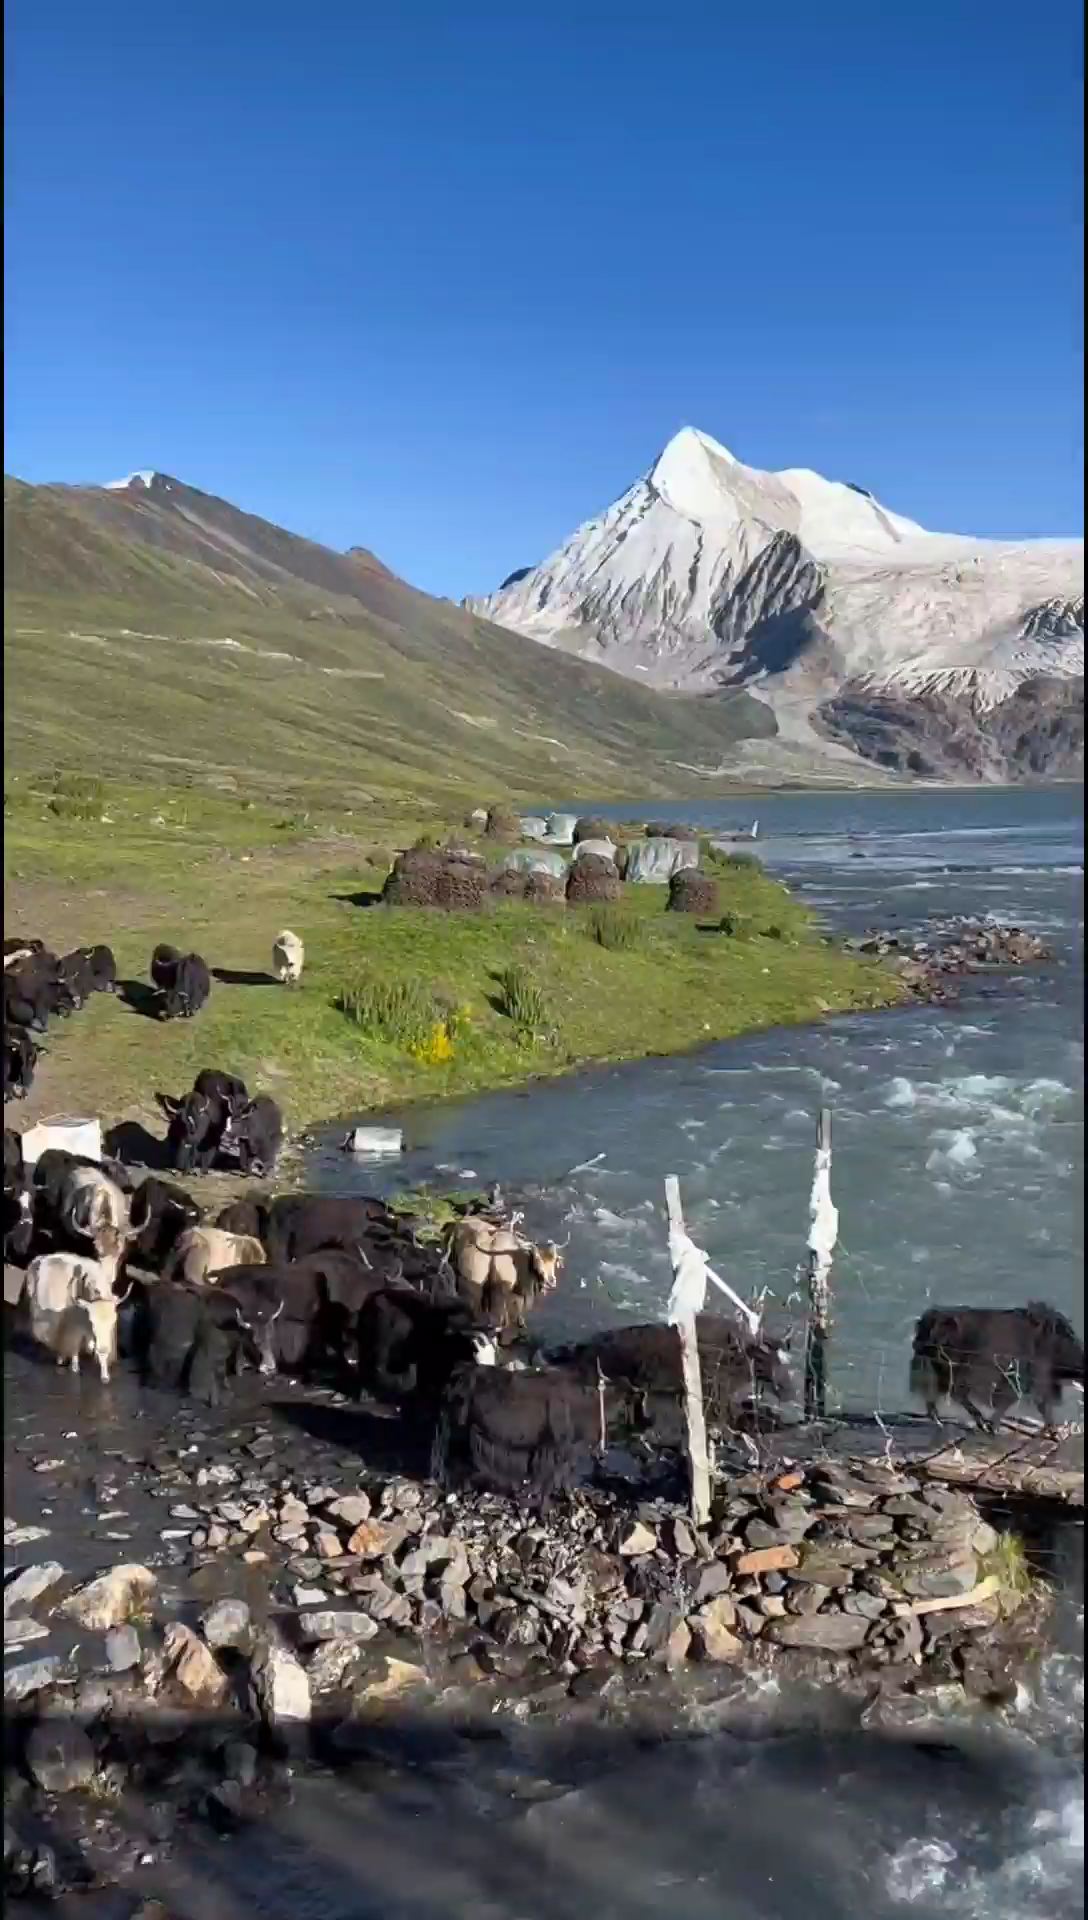 这里不是冰岛，也不是瑞士，这里是中国那曲 萨普冰川#西藏萨普冰川